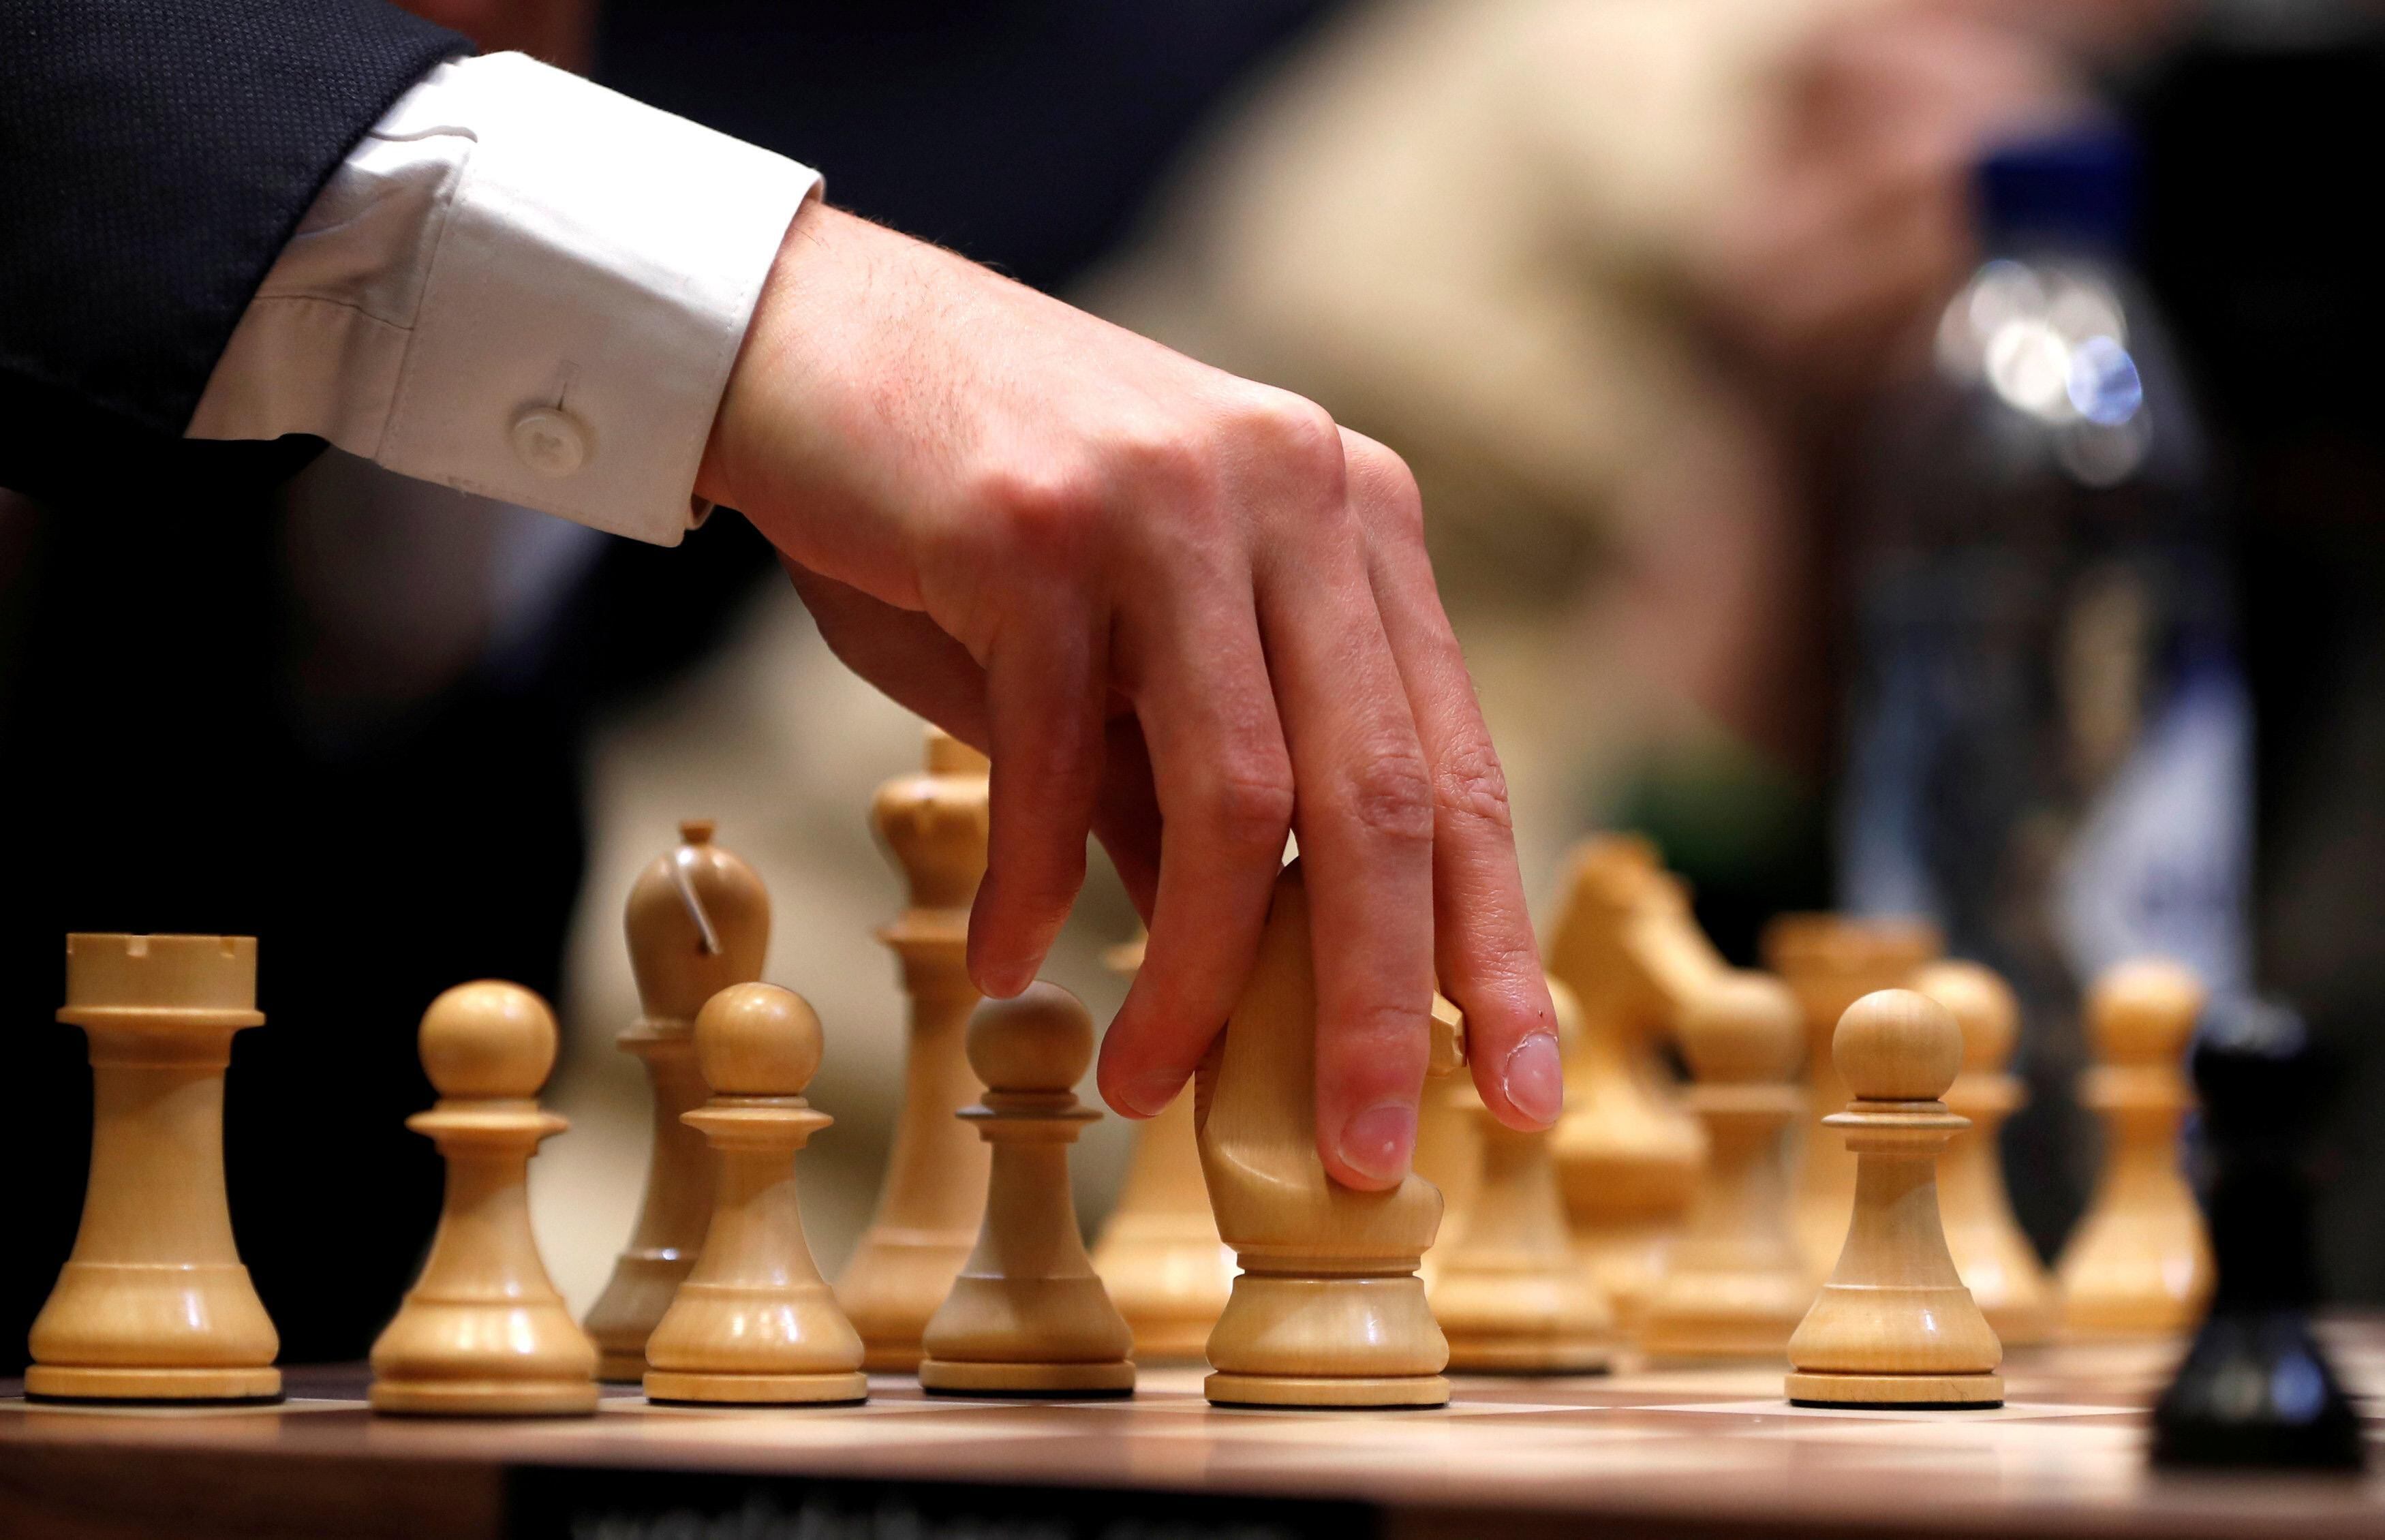 Campeão mundial de xadrez abandona partida contra jovem acusado de